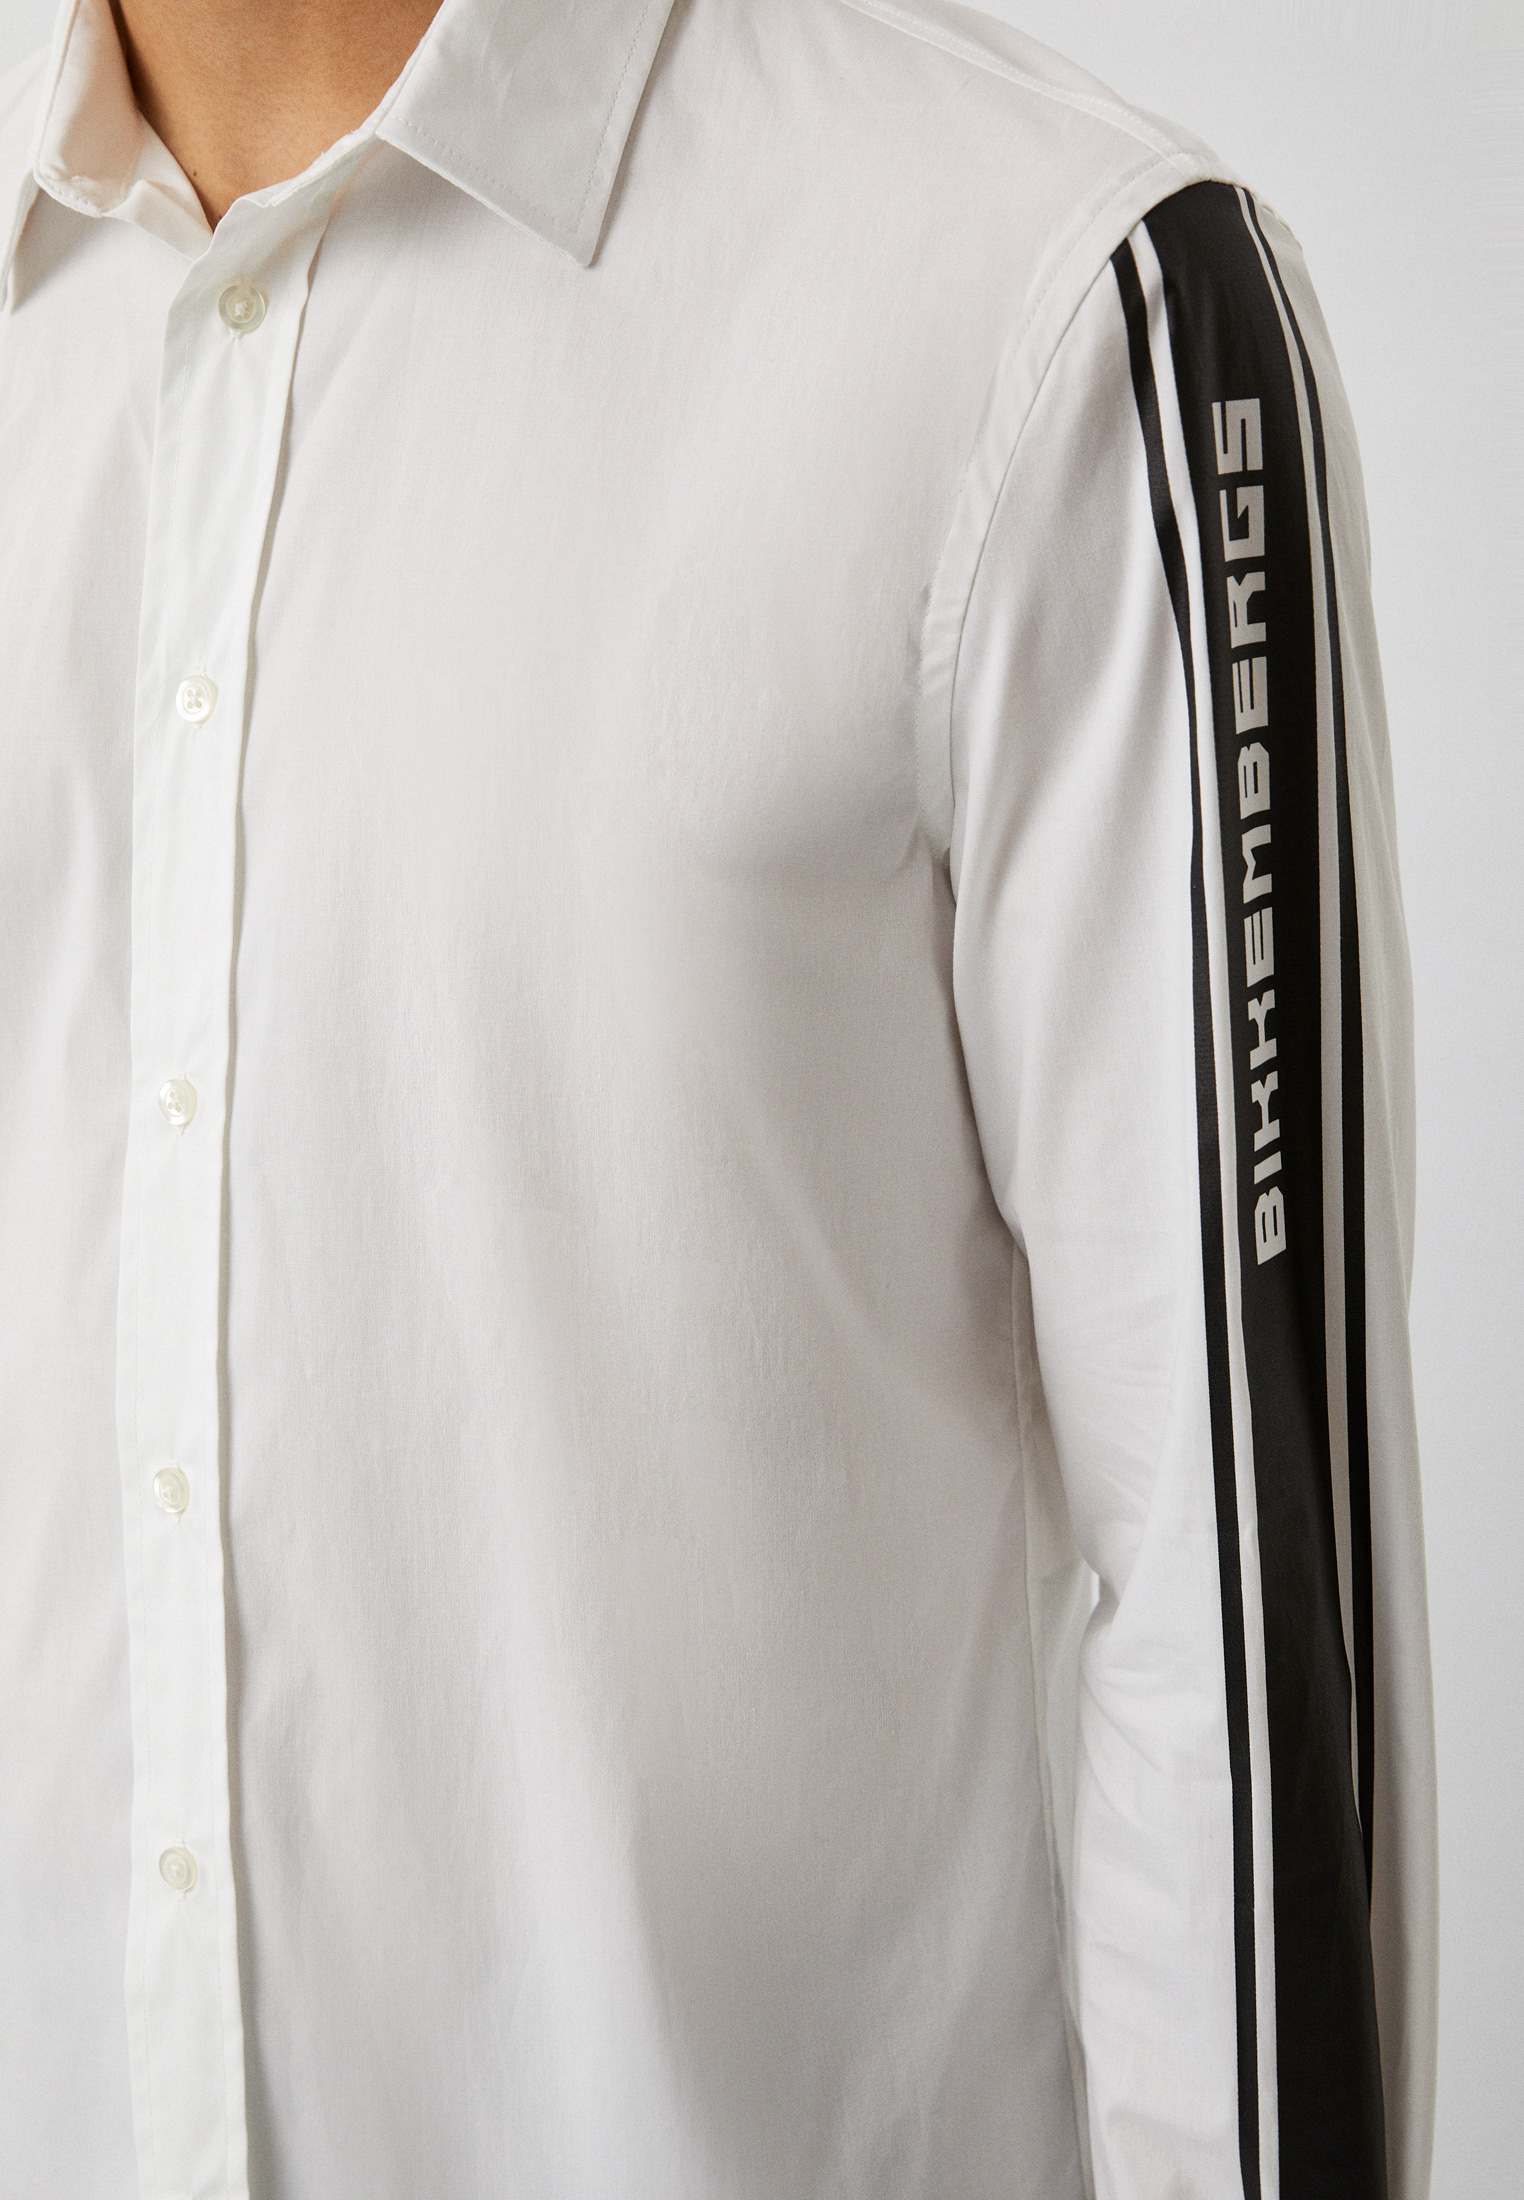 Рубашка с длинным рукавом Bikkembergs (Биккембергс) C C 052 5D S 2931: изображение 18